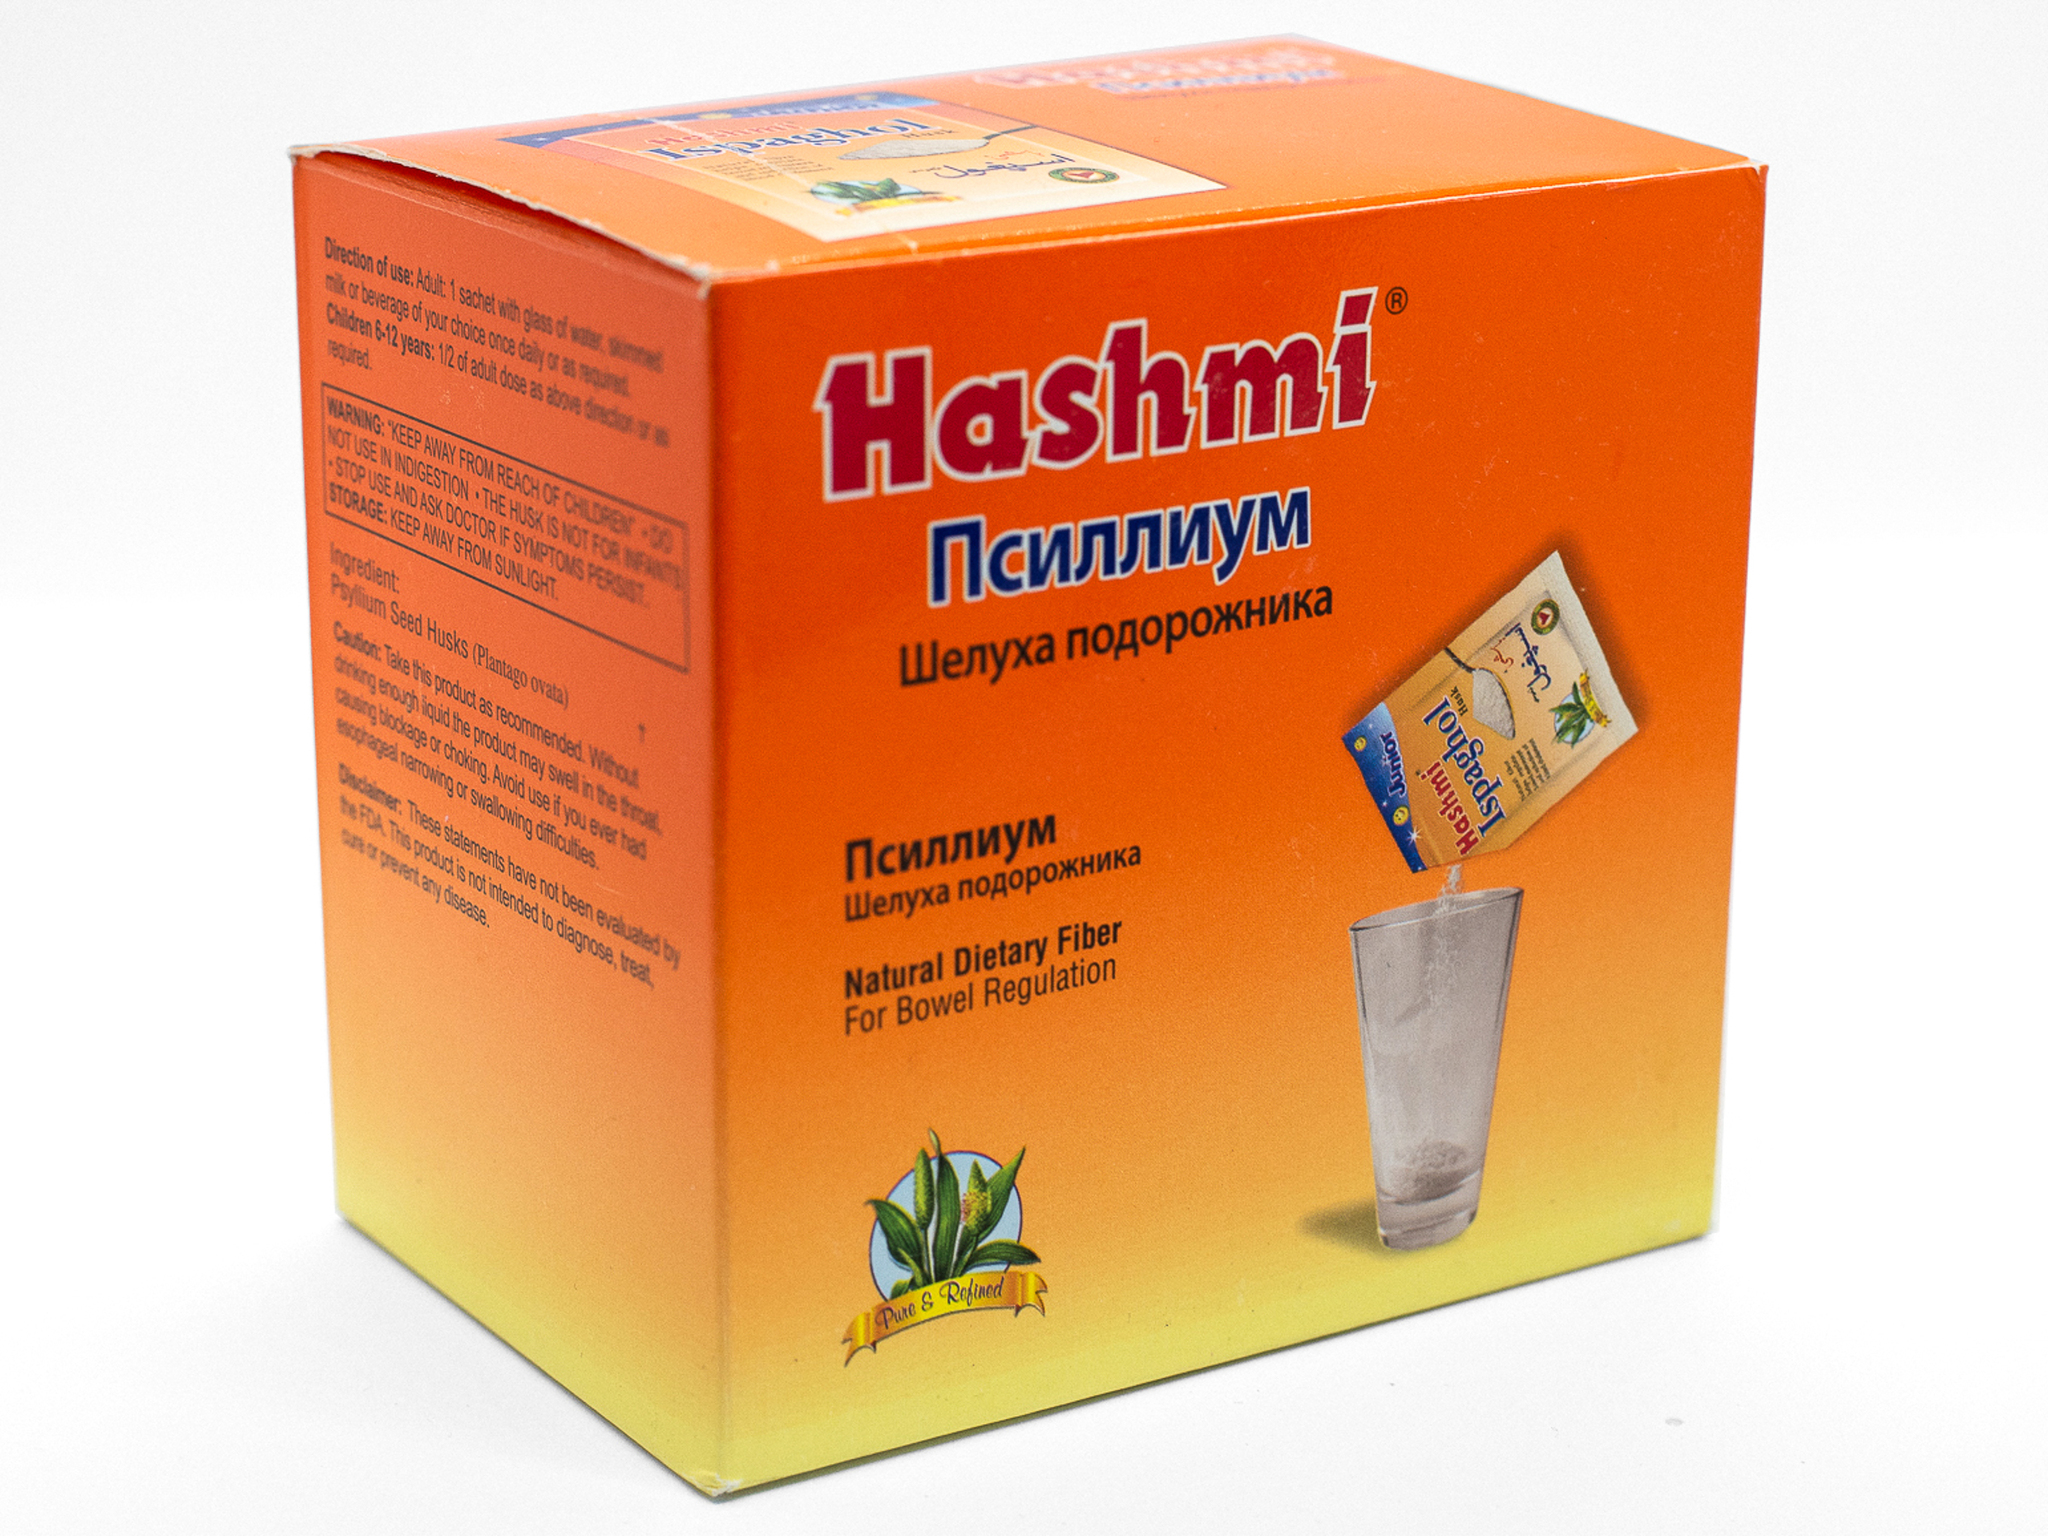 Псилиум подорожника. Шелуха семян подорожника Hashmi. Фимицил Псиллиум. Псиллиум (шелуха подорожника) Wellness. Препараты на основе псиллиума.